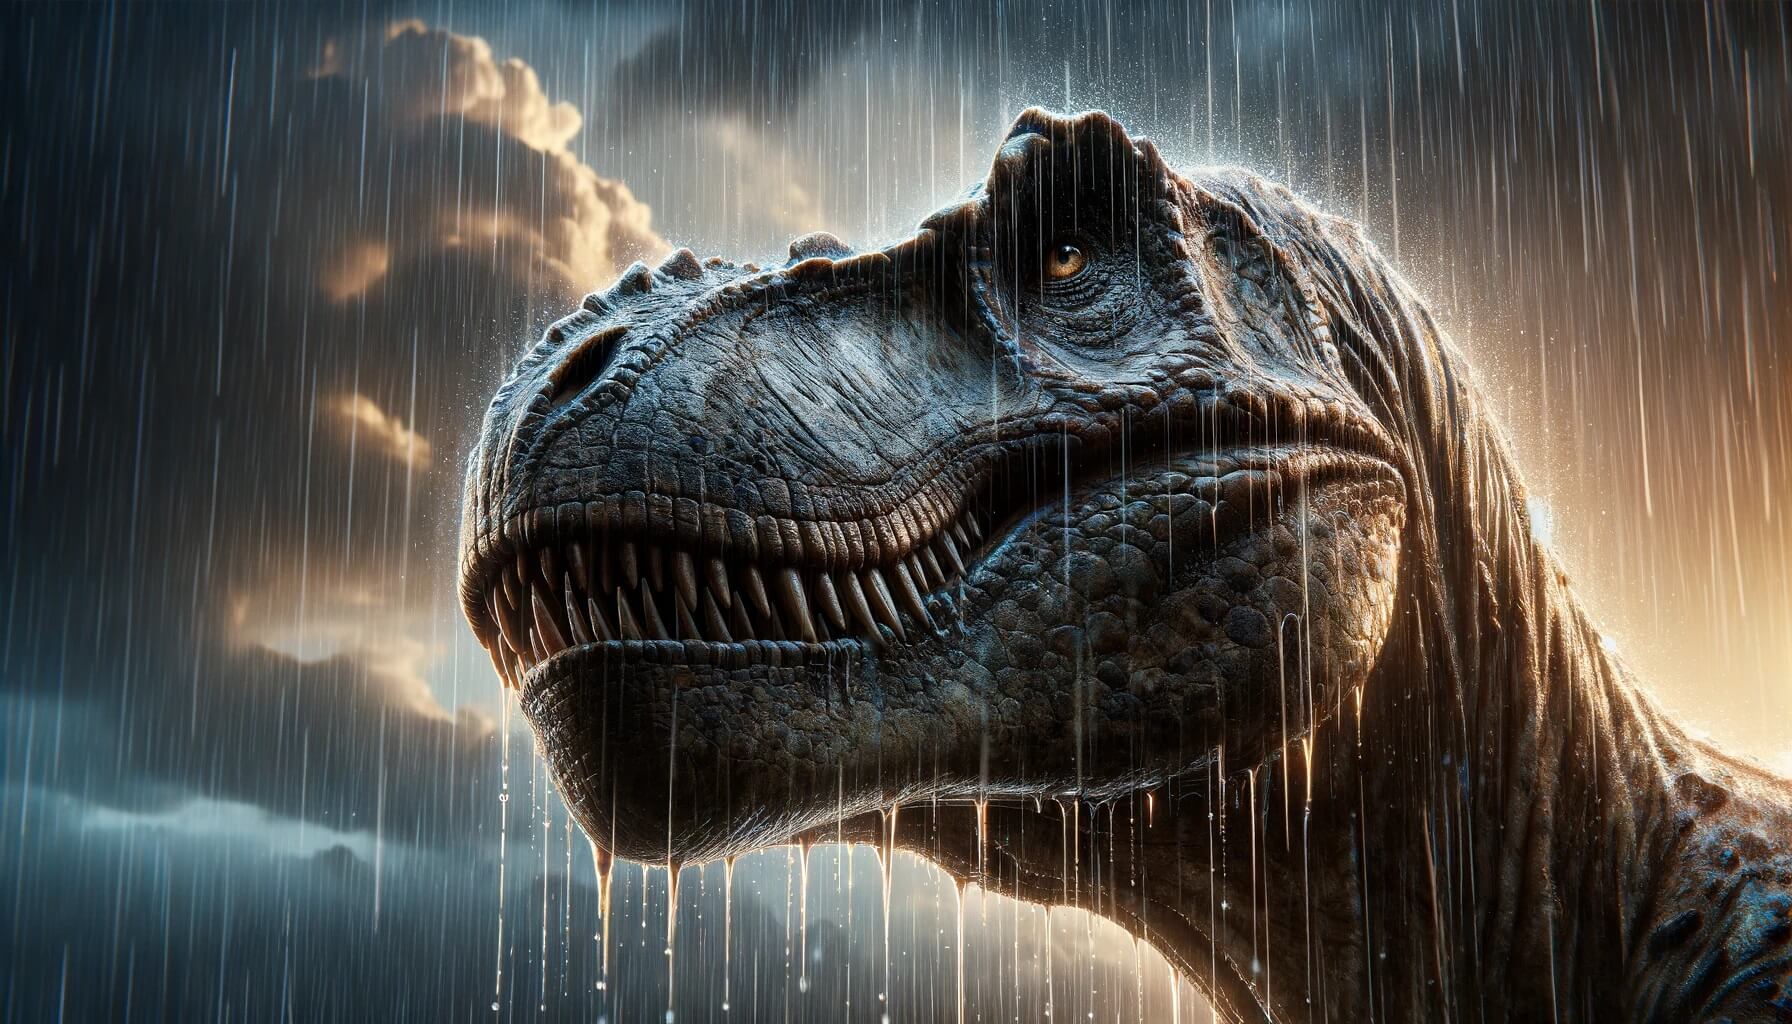 Огромные динозавры появились на Земле после того, как дождь не прекращался 2 миллиона лет. Дожди на протяжении 2 миллионов лет помогли динозаврам стать самыми грозными животными в истории Земли. Фото.